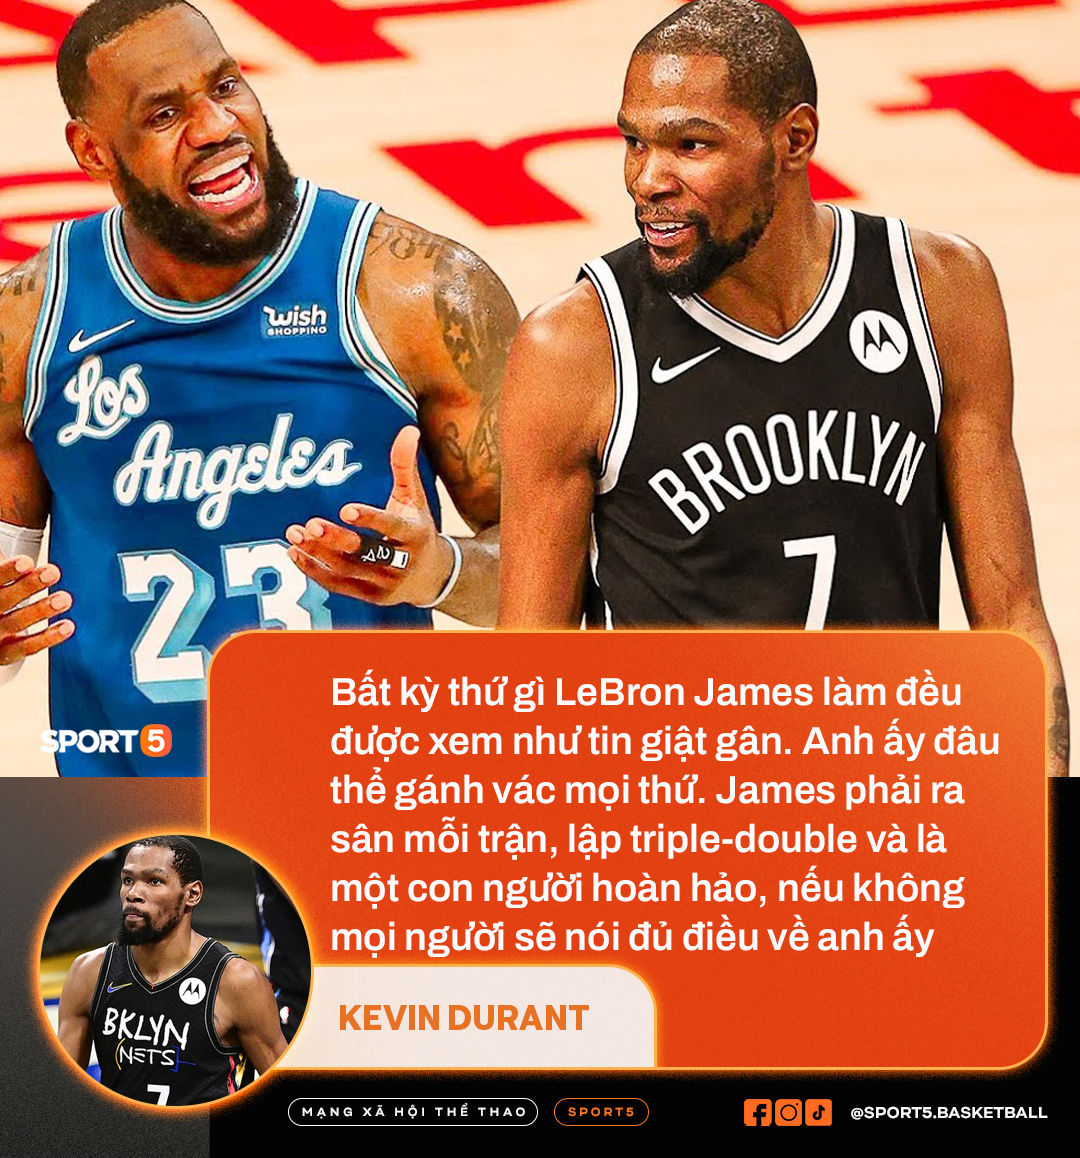 Kevin Durant bất ngờ lên tiếng bênh vực LeBron James trước những chỉ trích  - Ảnh 2.